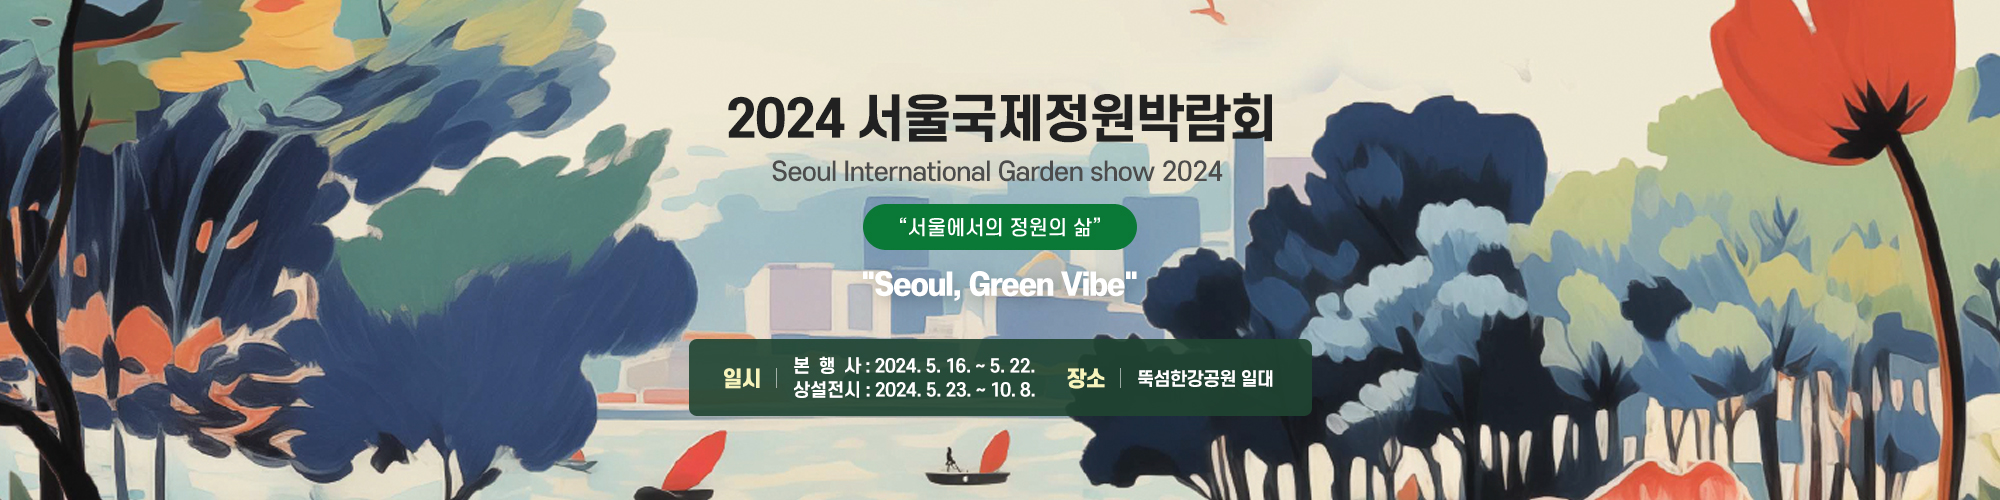 2024 서울 국제정원박람회
일시  본행사: 2024.5.16. ~ 5. 22.
         상설전시: 2024.5.23. ~10.8.